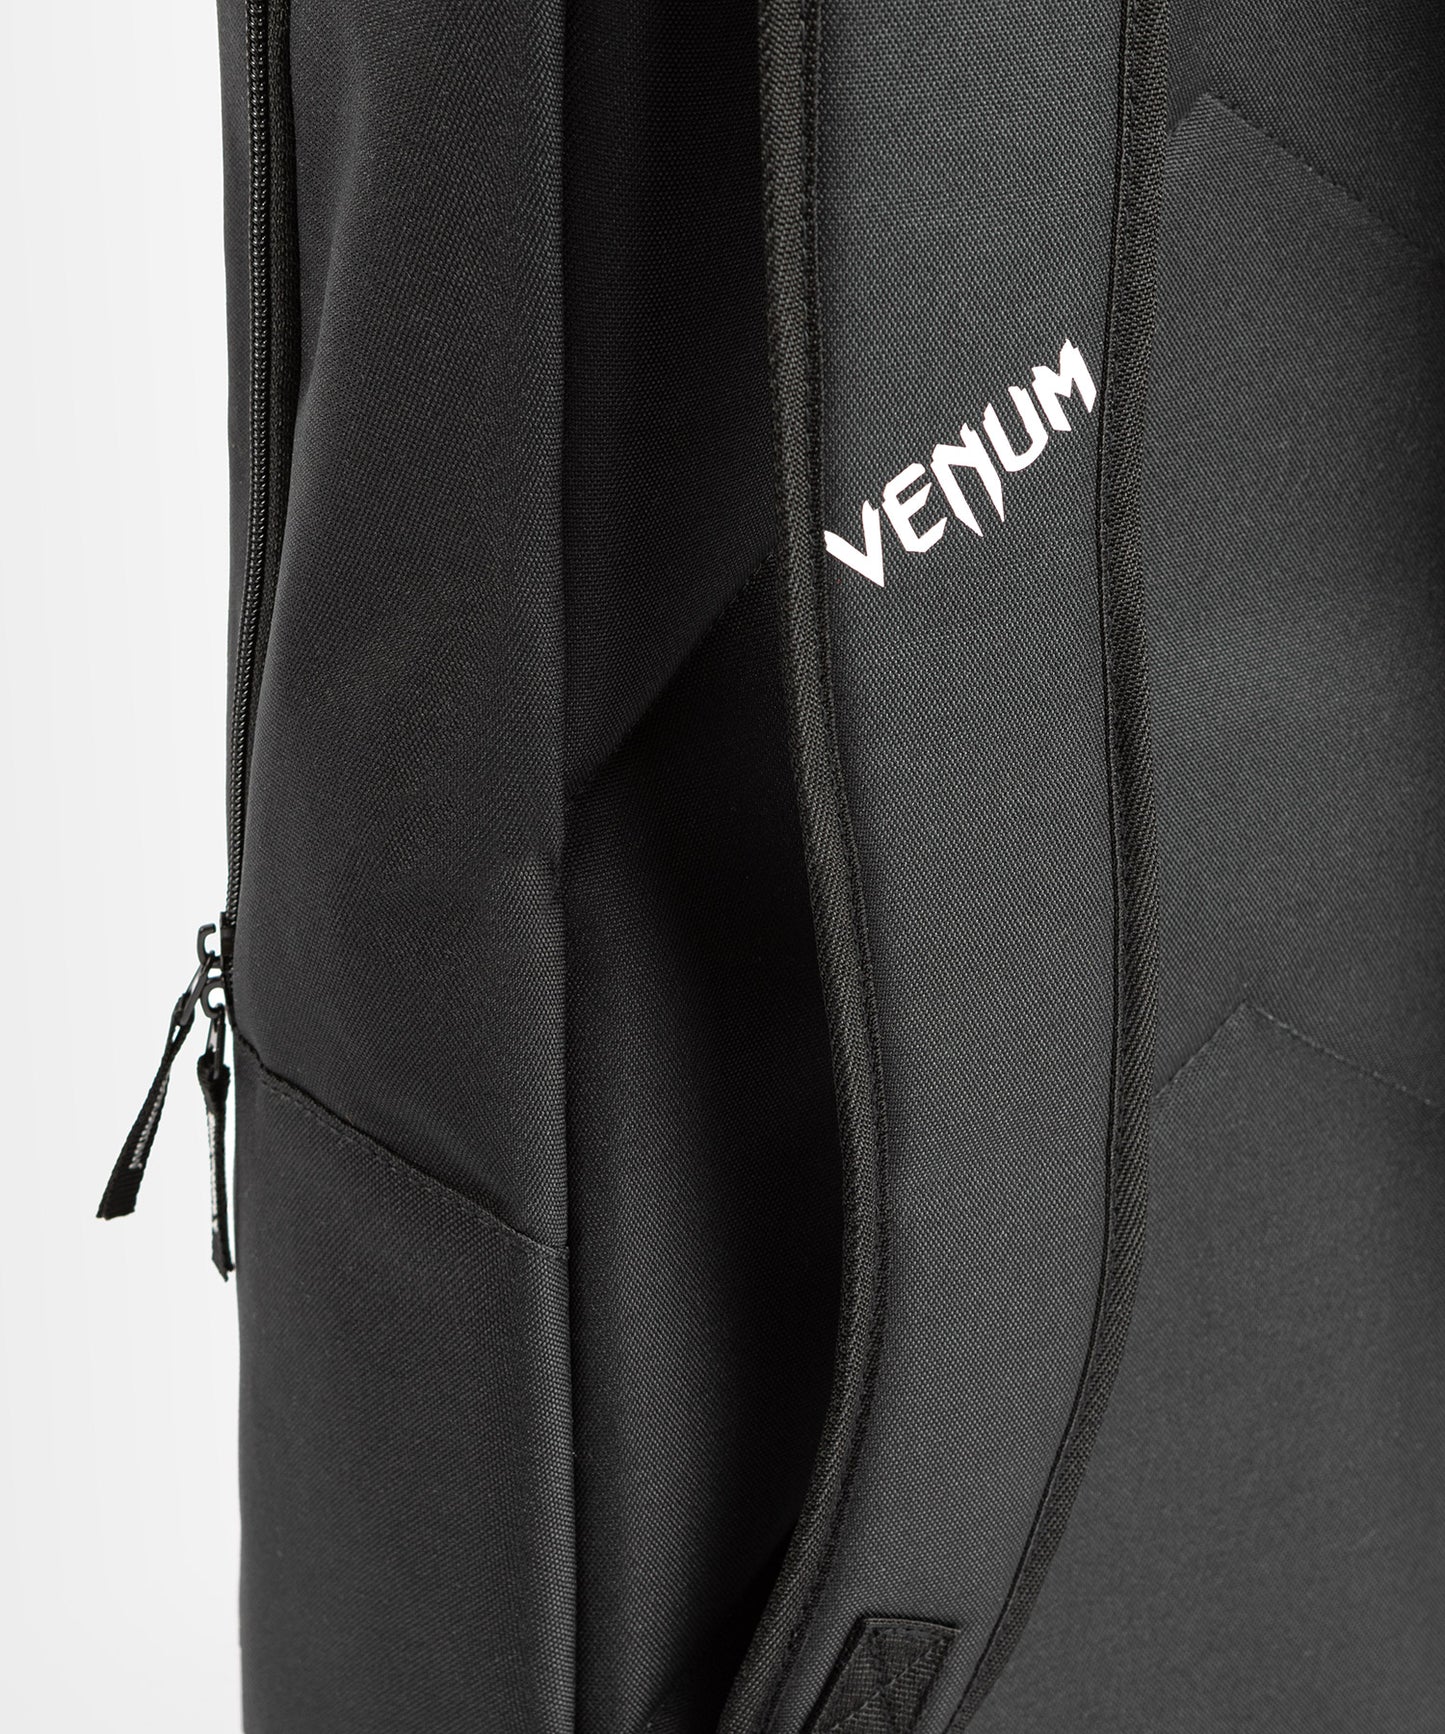 Venum Unisex-Adult Sac à dos, Polyester, Noir/Blanc, Taille unique